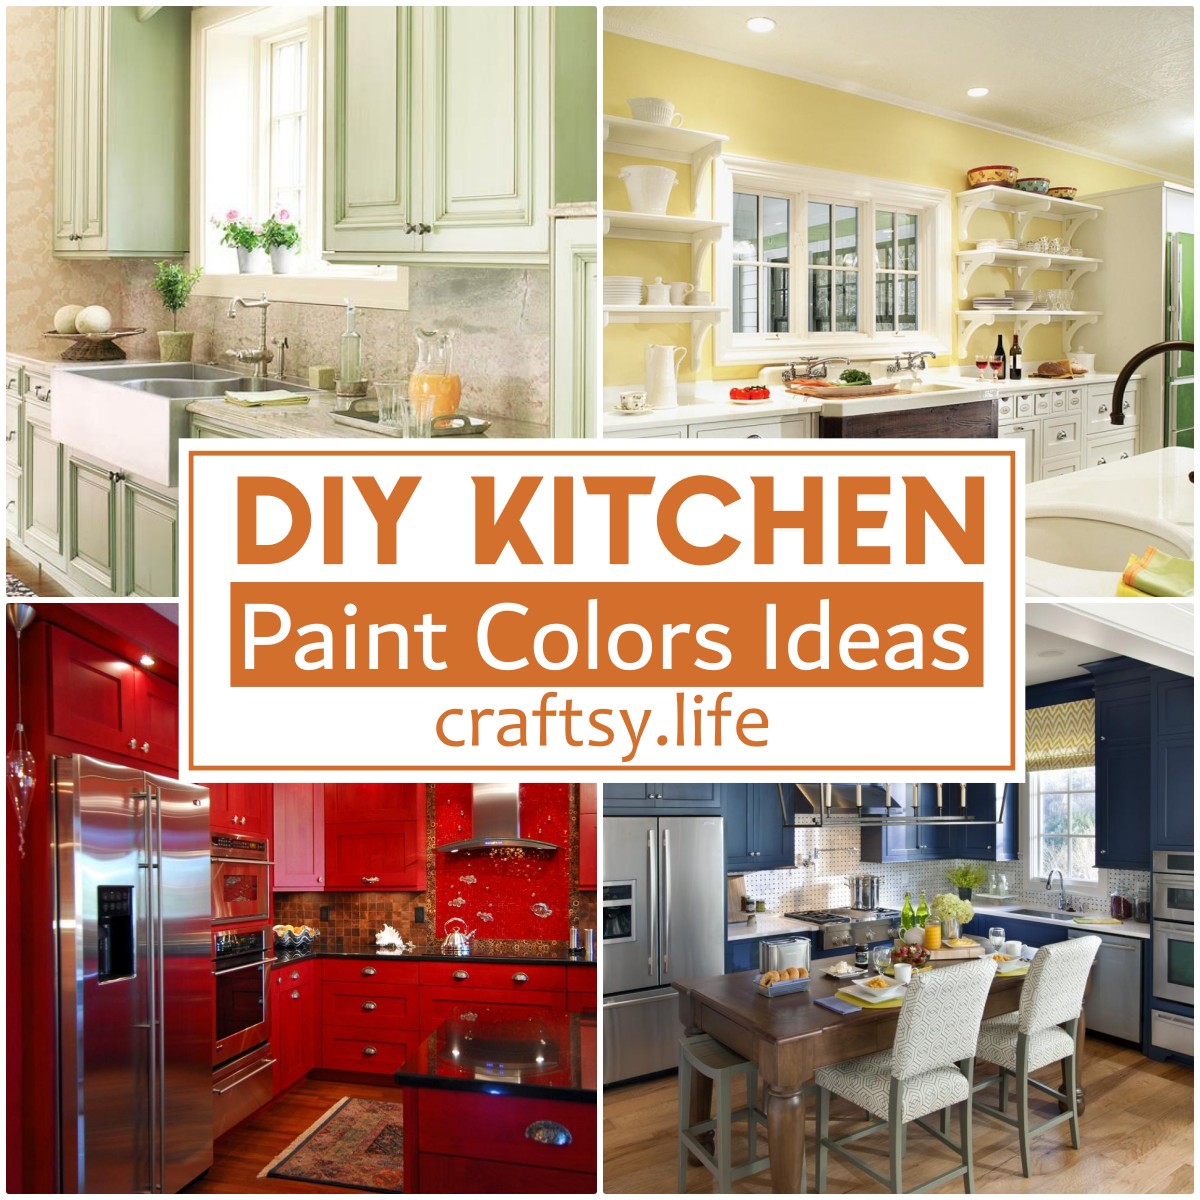 DIY Kitchen Paint Colors Ideas